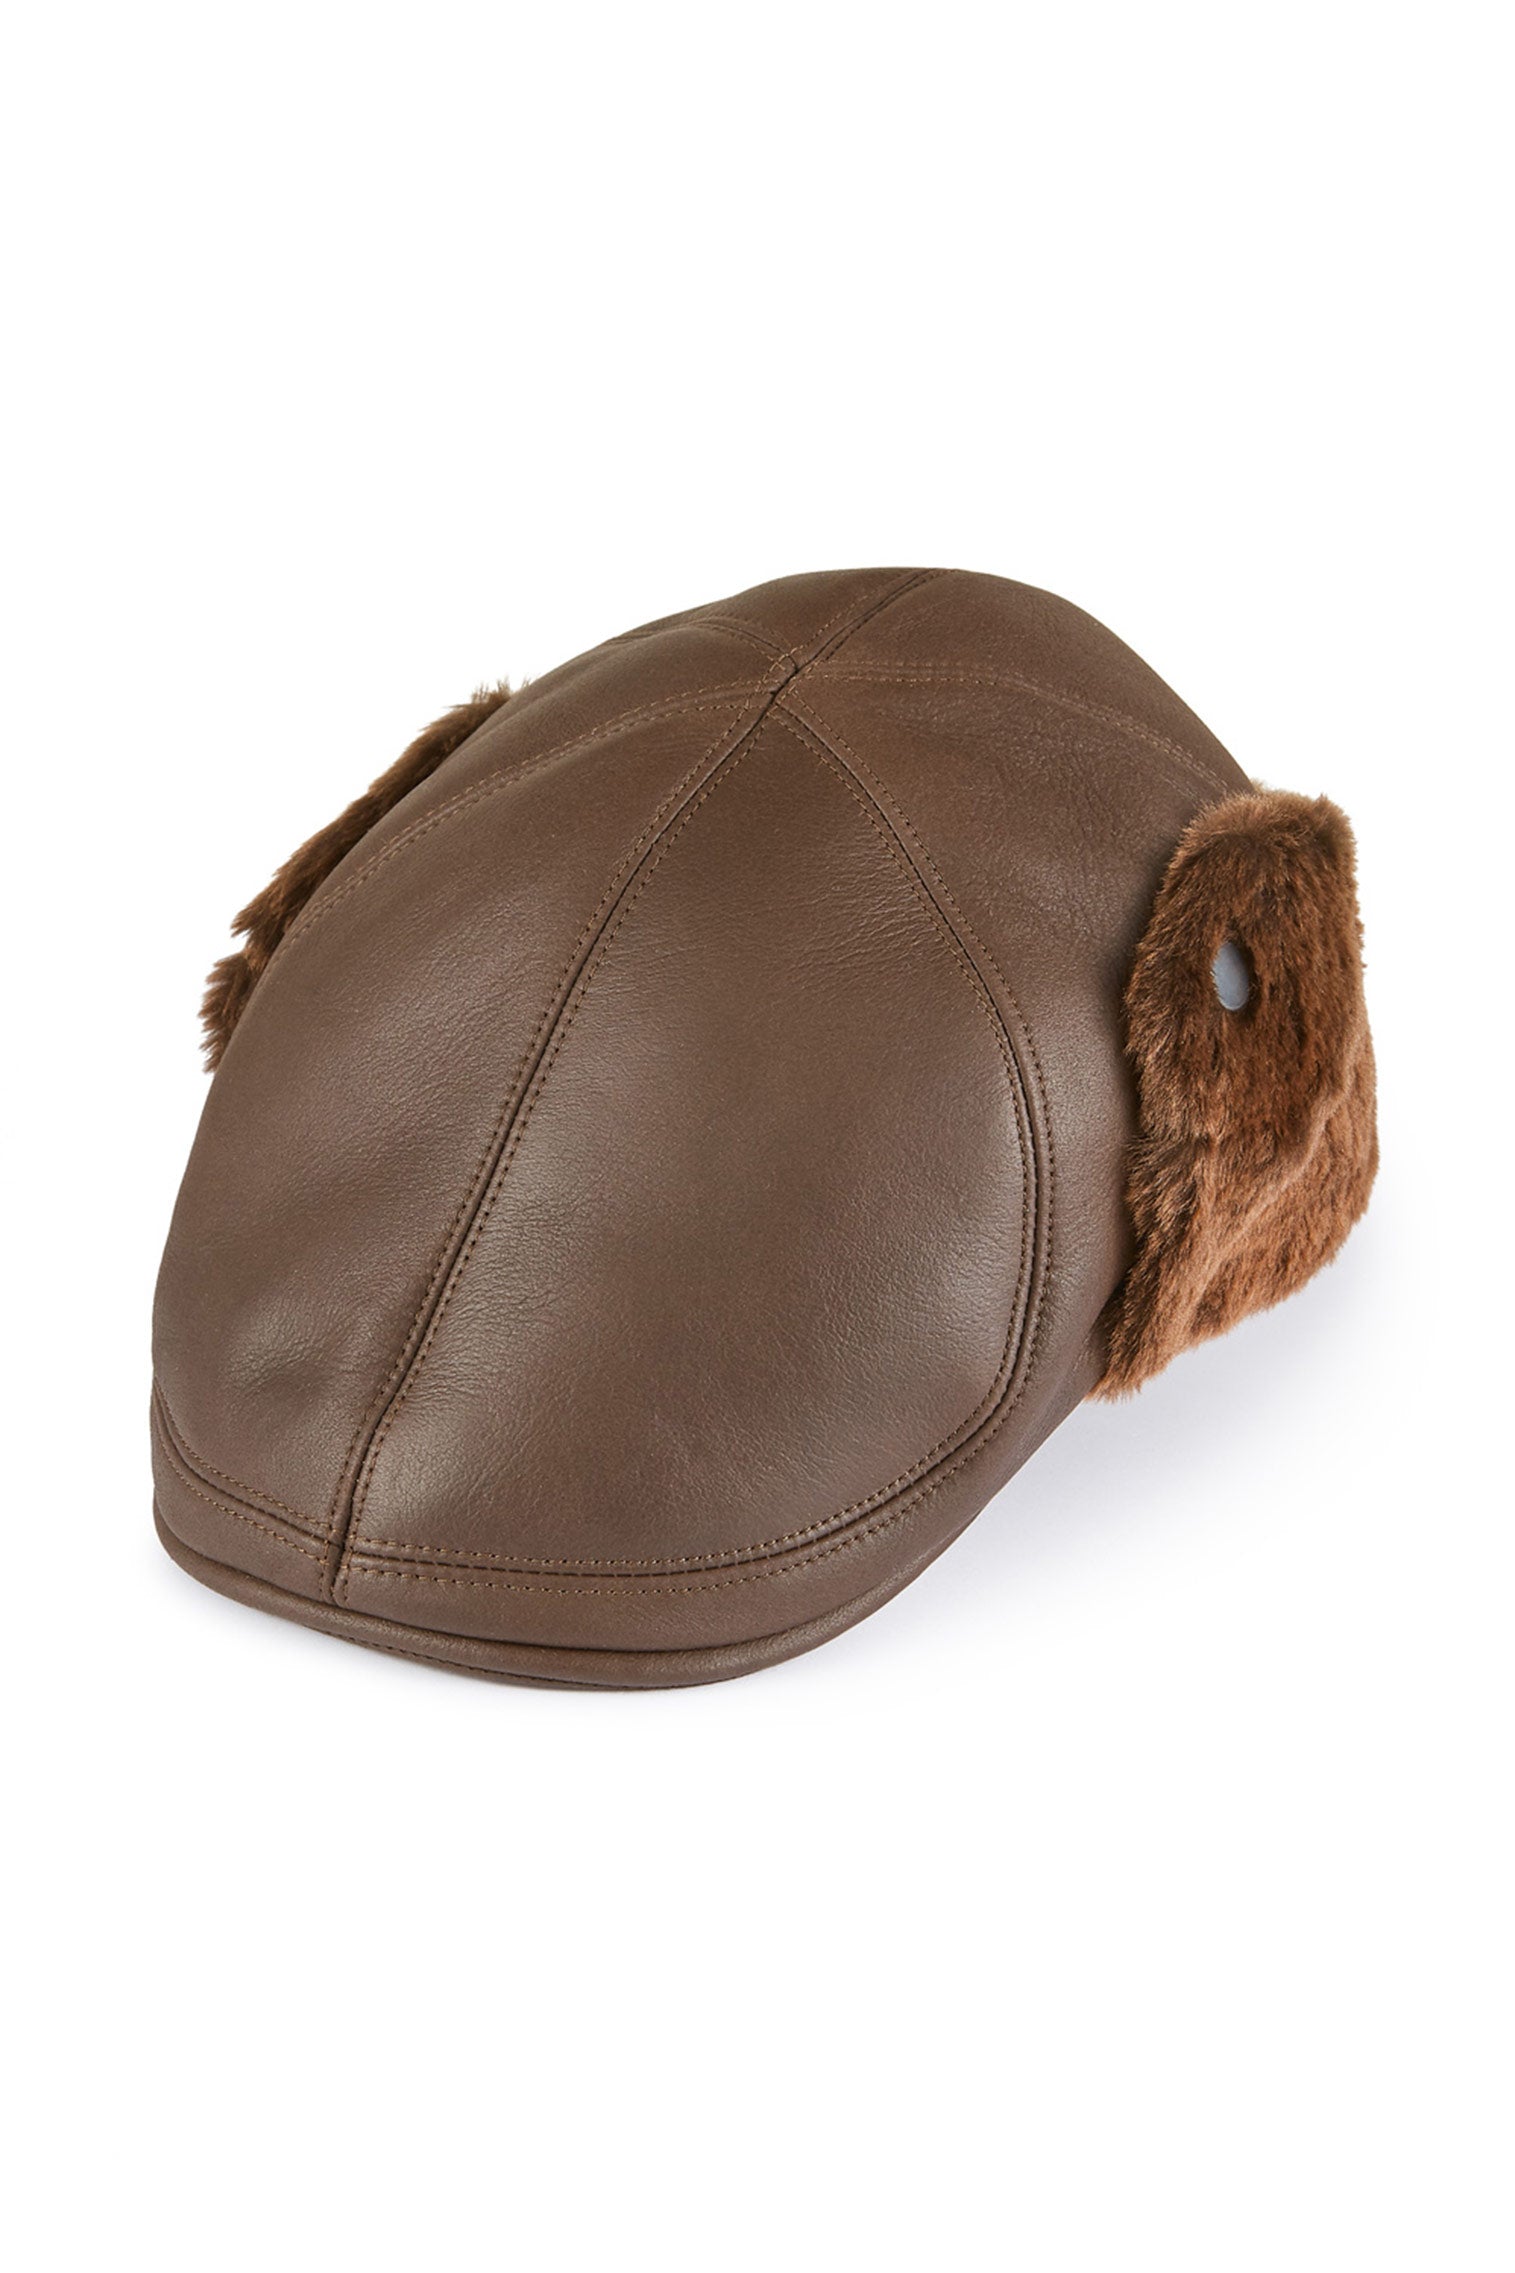 Alberta Leather Flat Cap - Winter Hats - Lock & Co. Hatters London UK